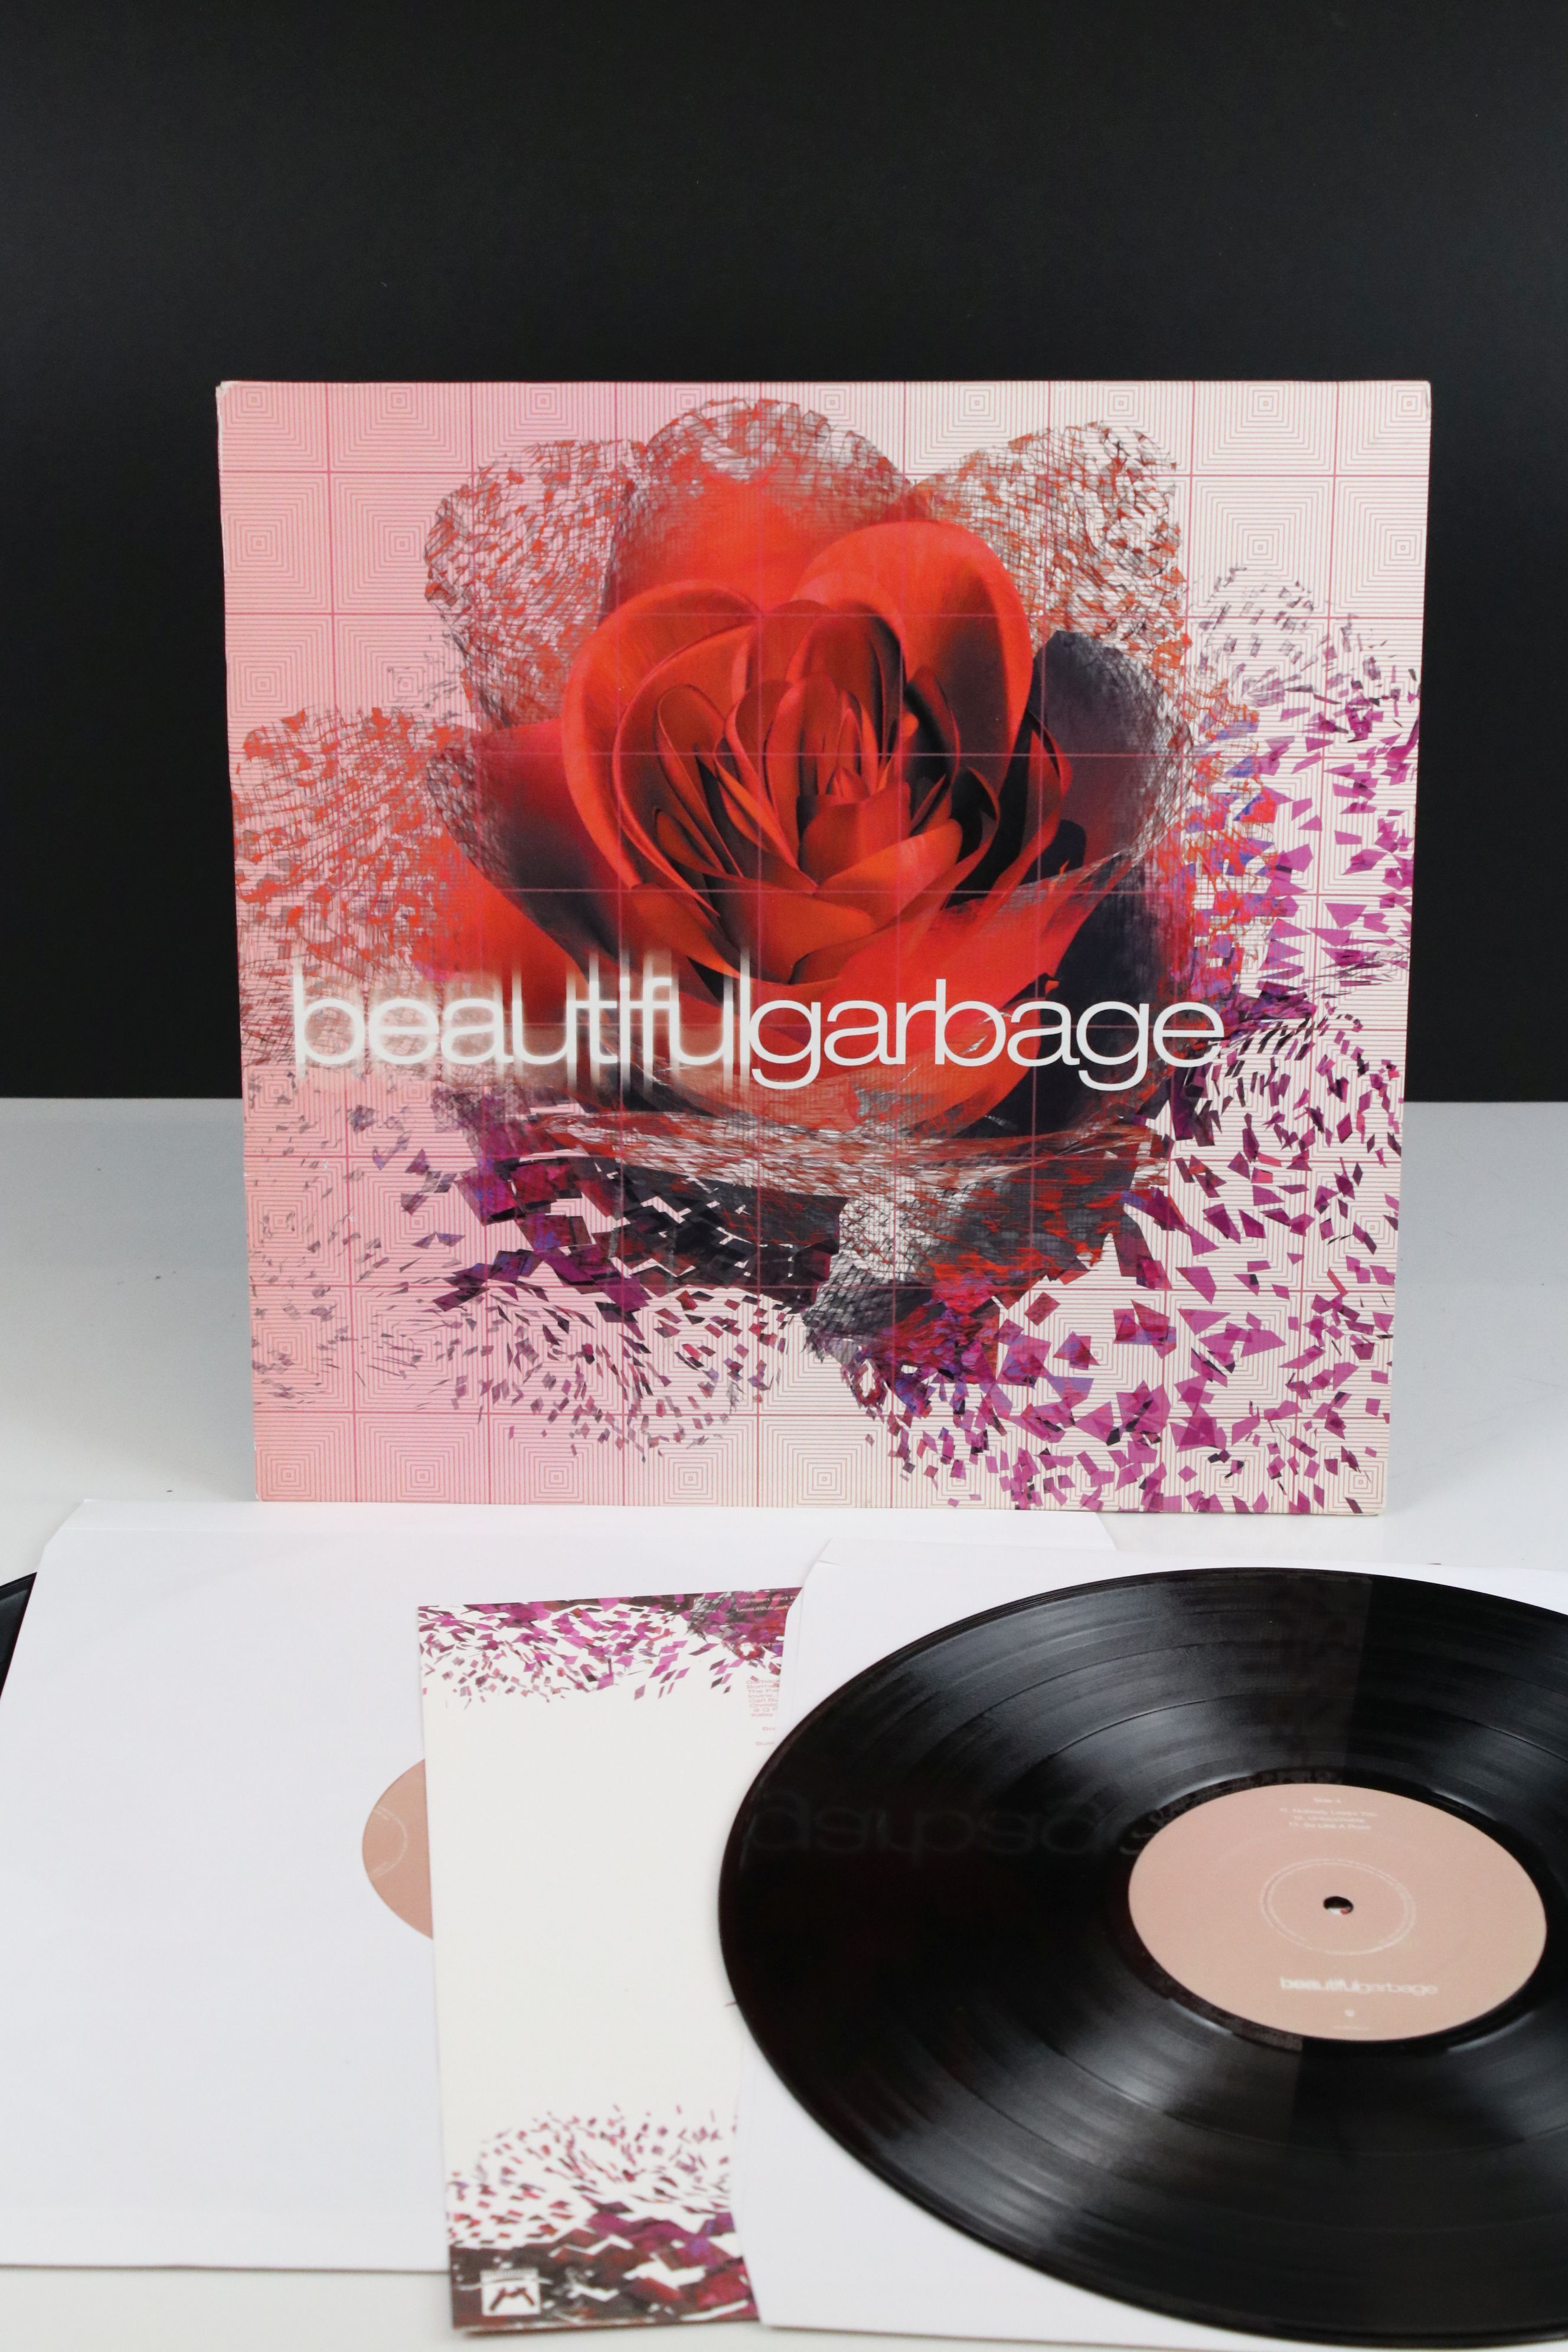 Vinyl - Garbage Beautiful Garbage Double LP on Mushroom MUSH95LP, with lyric inner, sleeve vg++,